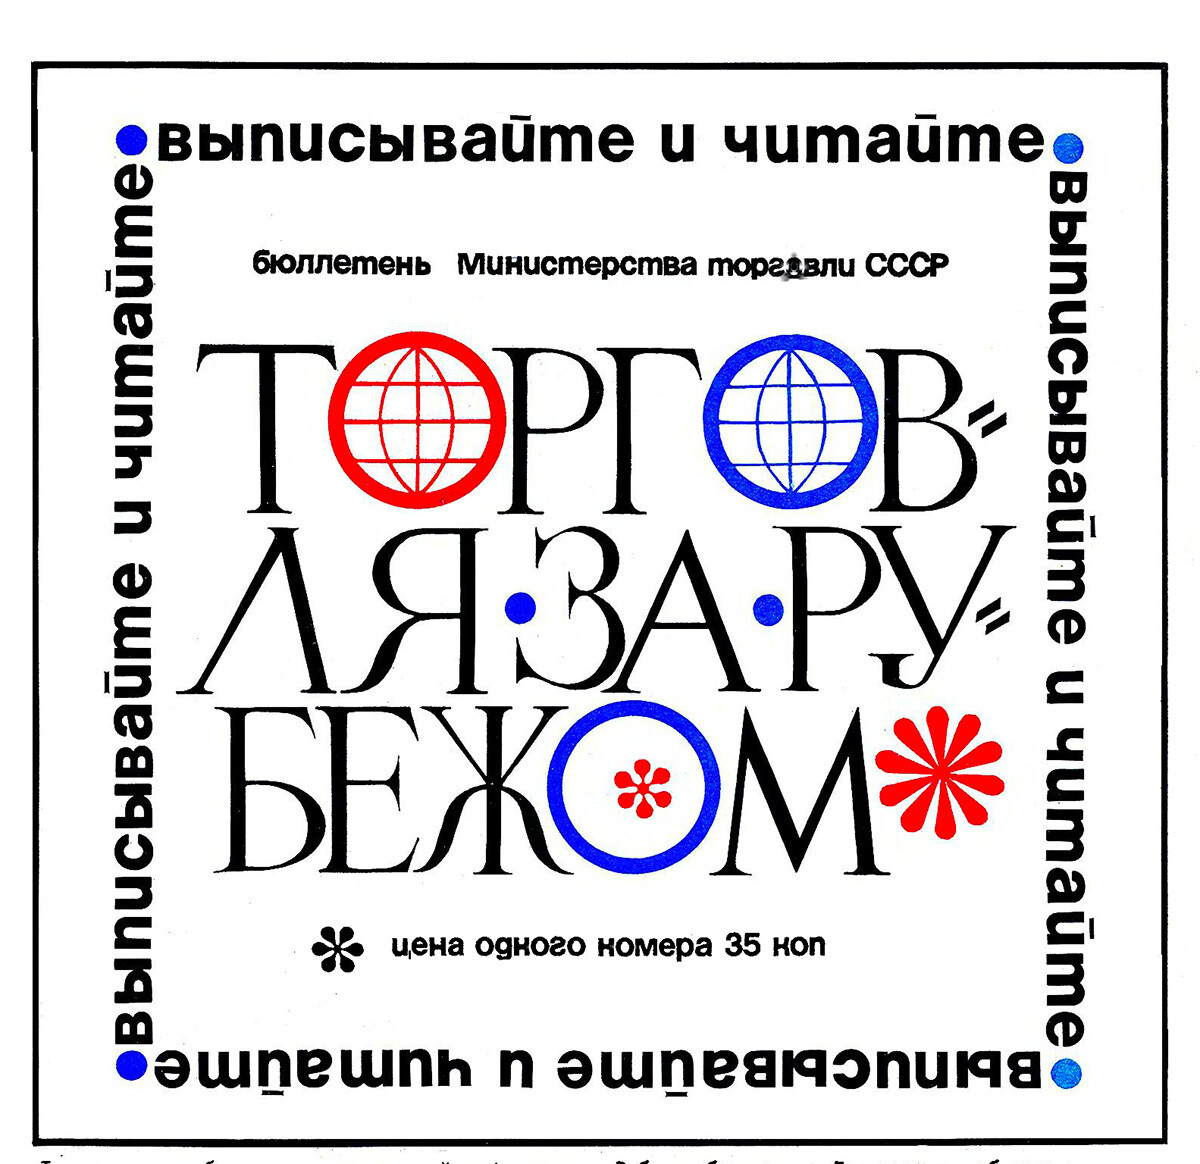 Publicité pour le bulletin d'information Torgovlia za roubejom (Commerce extérieur)